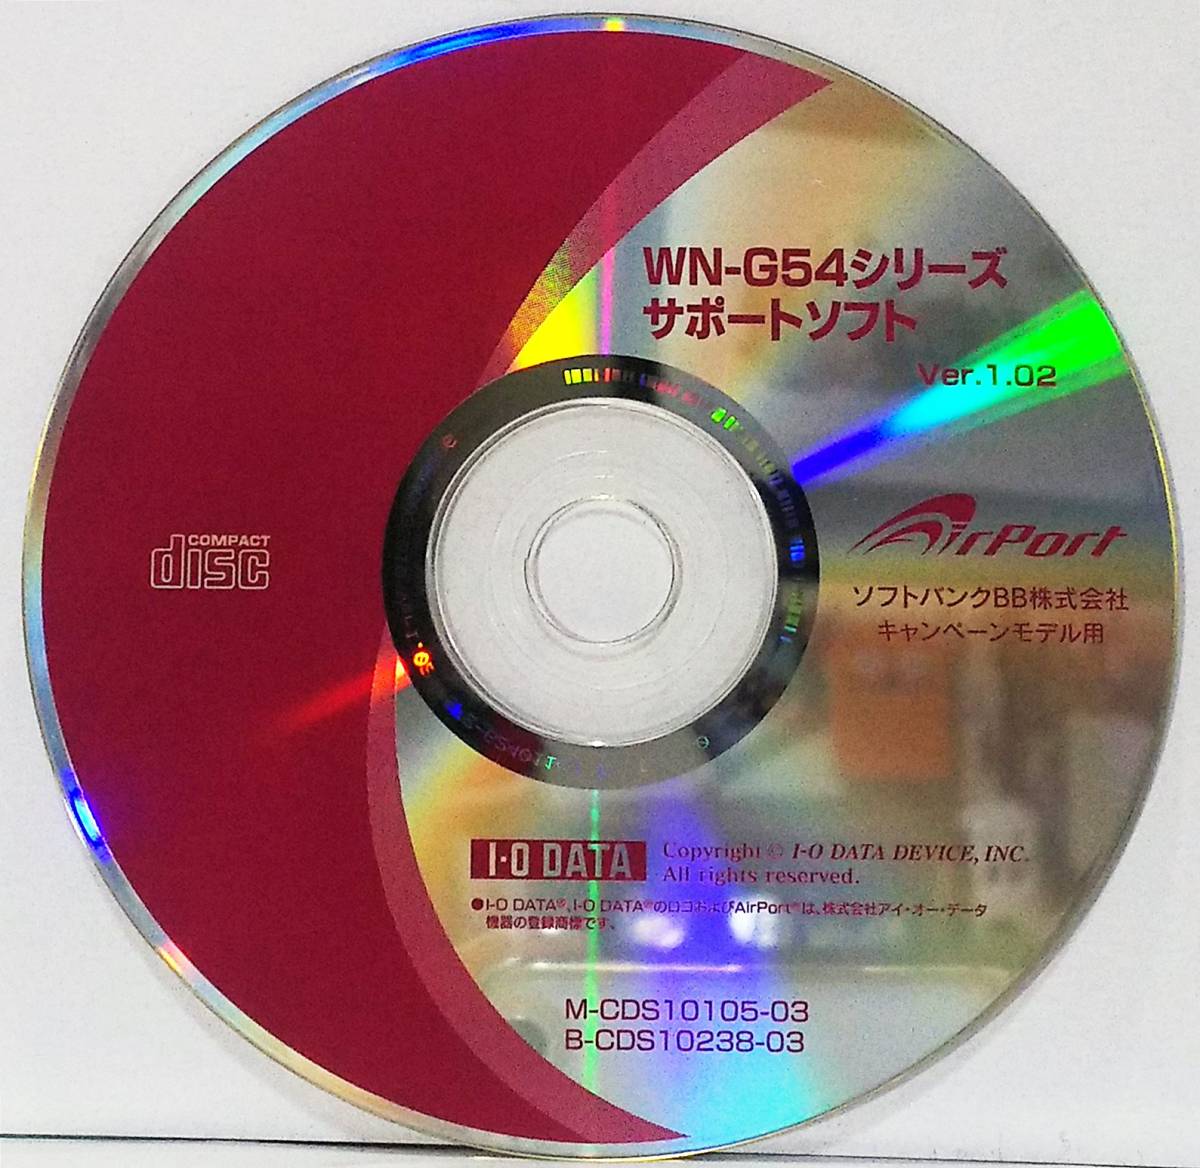 ★ソフトバンクBB AirPort Ⅰ・O DATA WN-G54シリーズ サポートソフト Ver.1.02 CD-ROM★_画像1